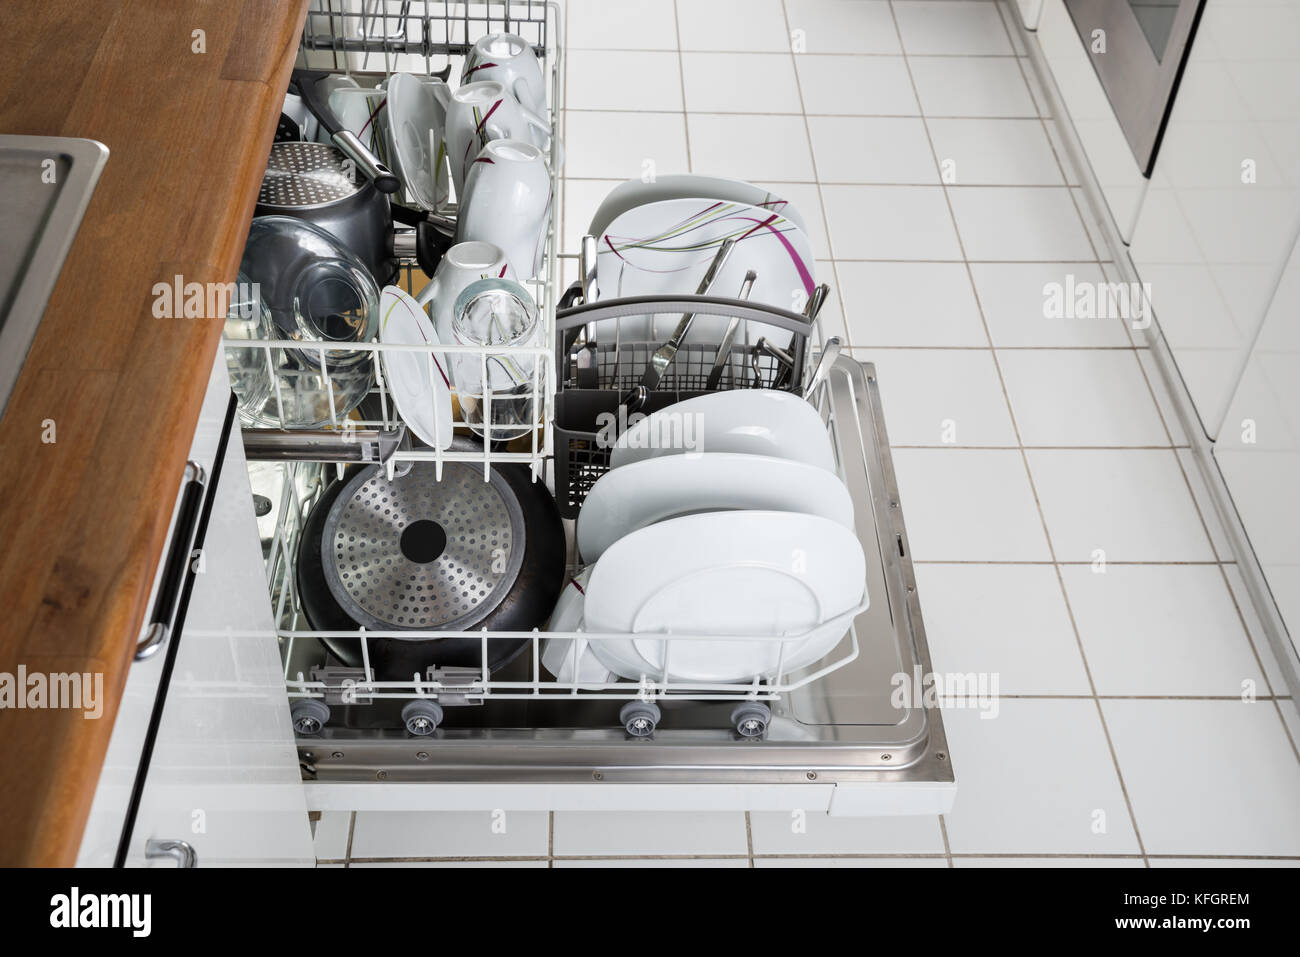 Photo des ustensiles disposés au lave-vaisselle dans la cuisine Banque D'Images